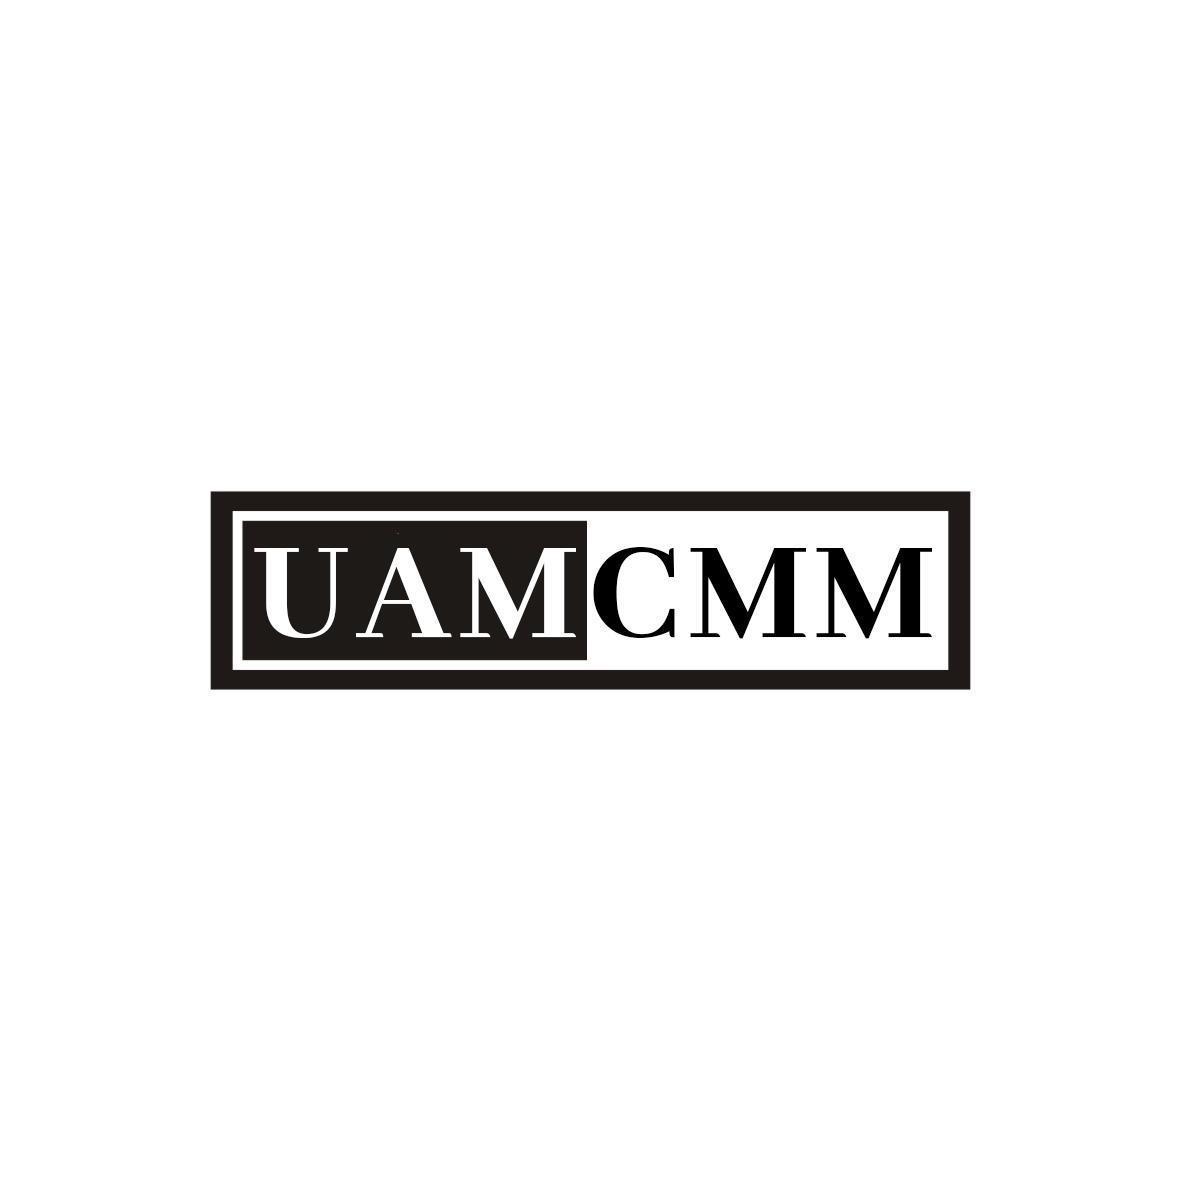 UAMCMM